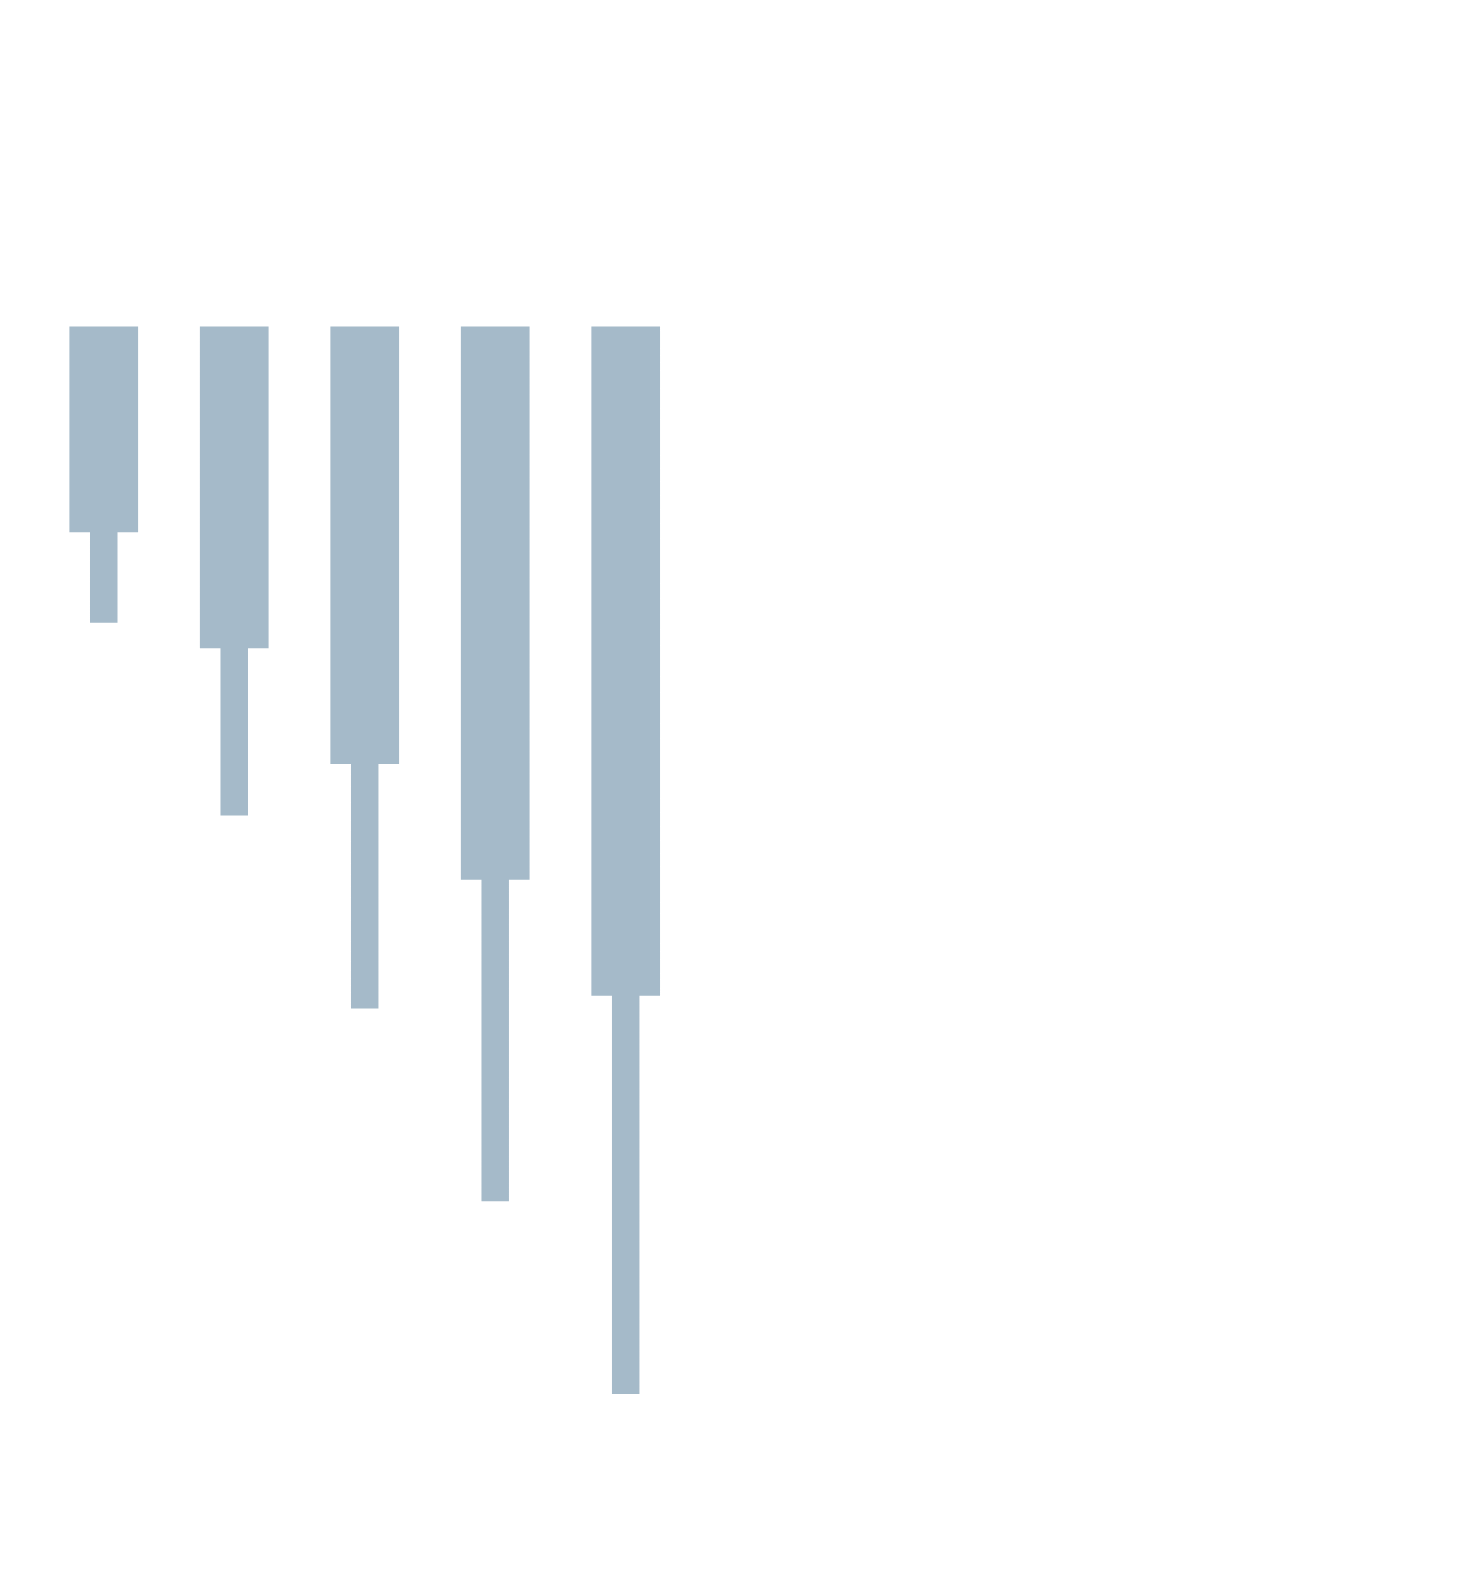 Valaris logo large for dark backgrounds (transparent PNG)